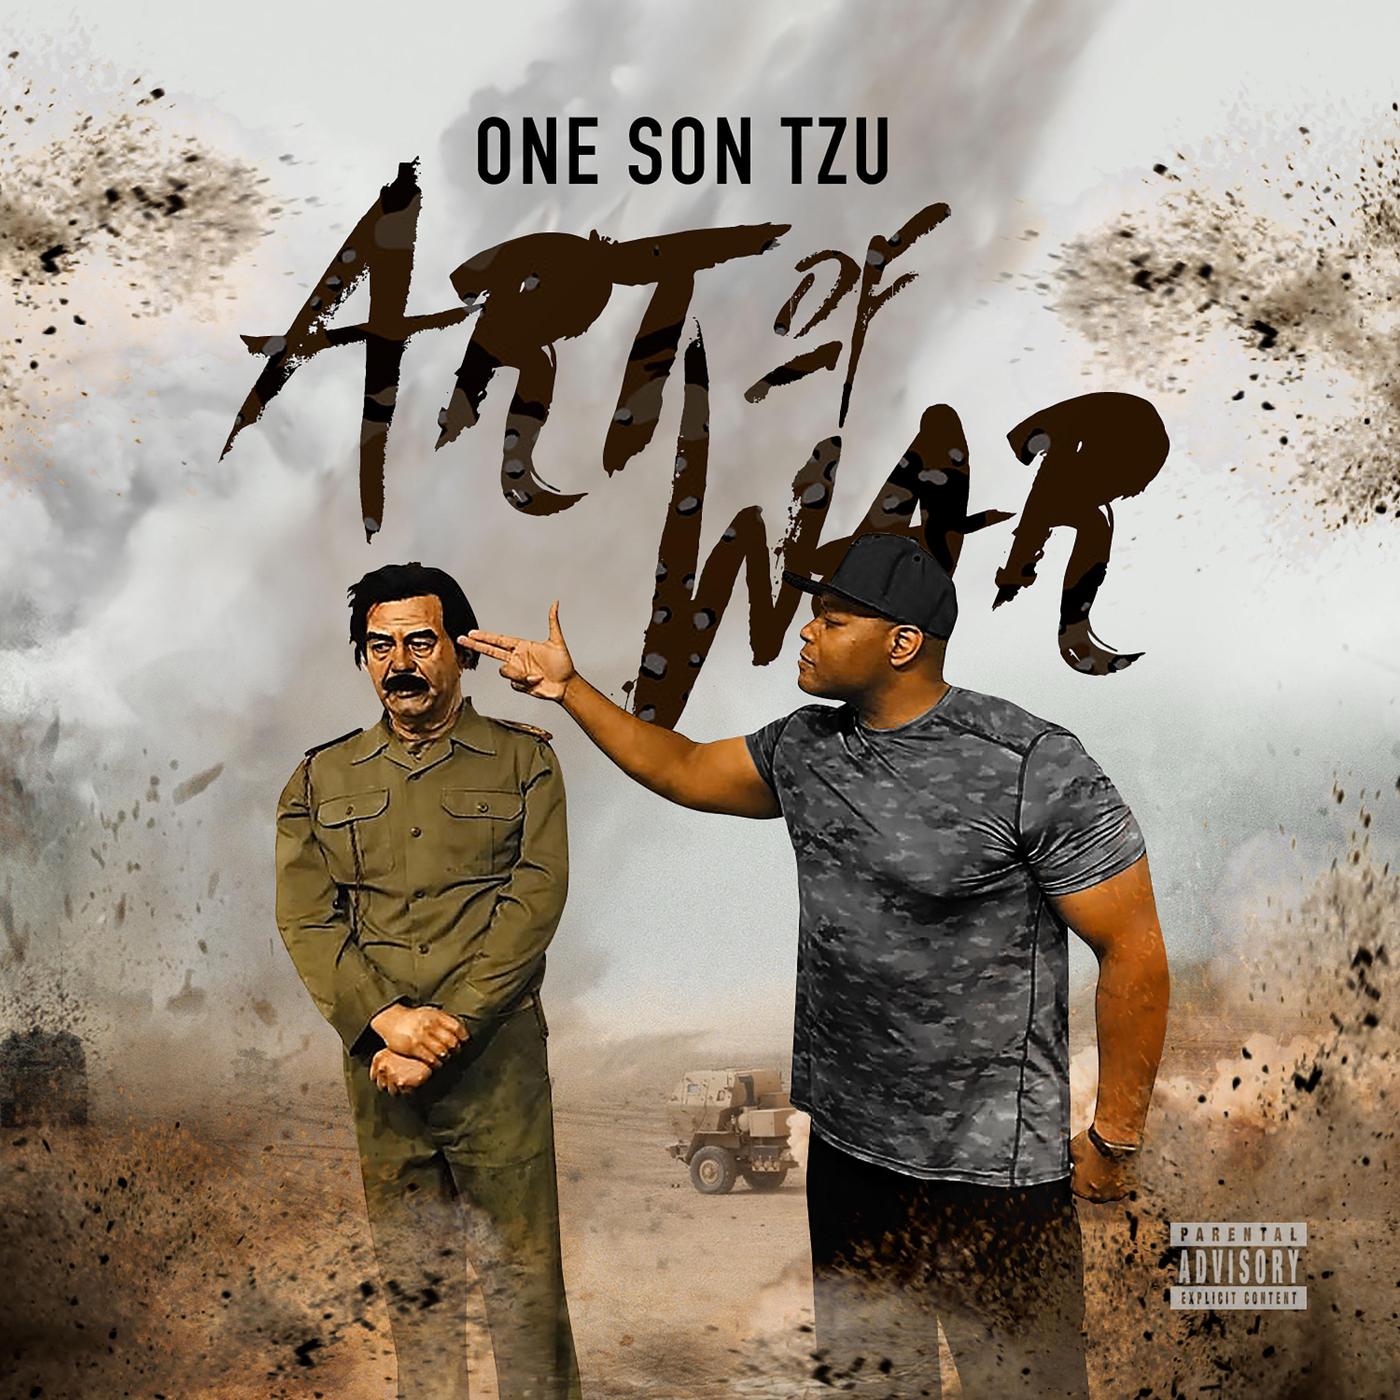 One Son - One Son Tzu